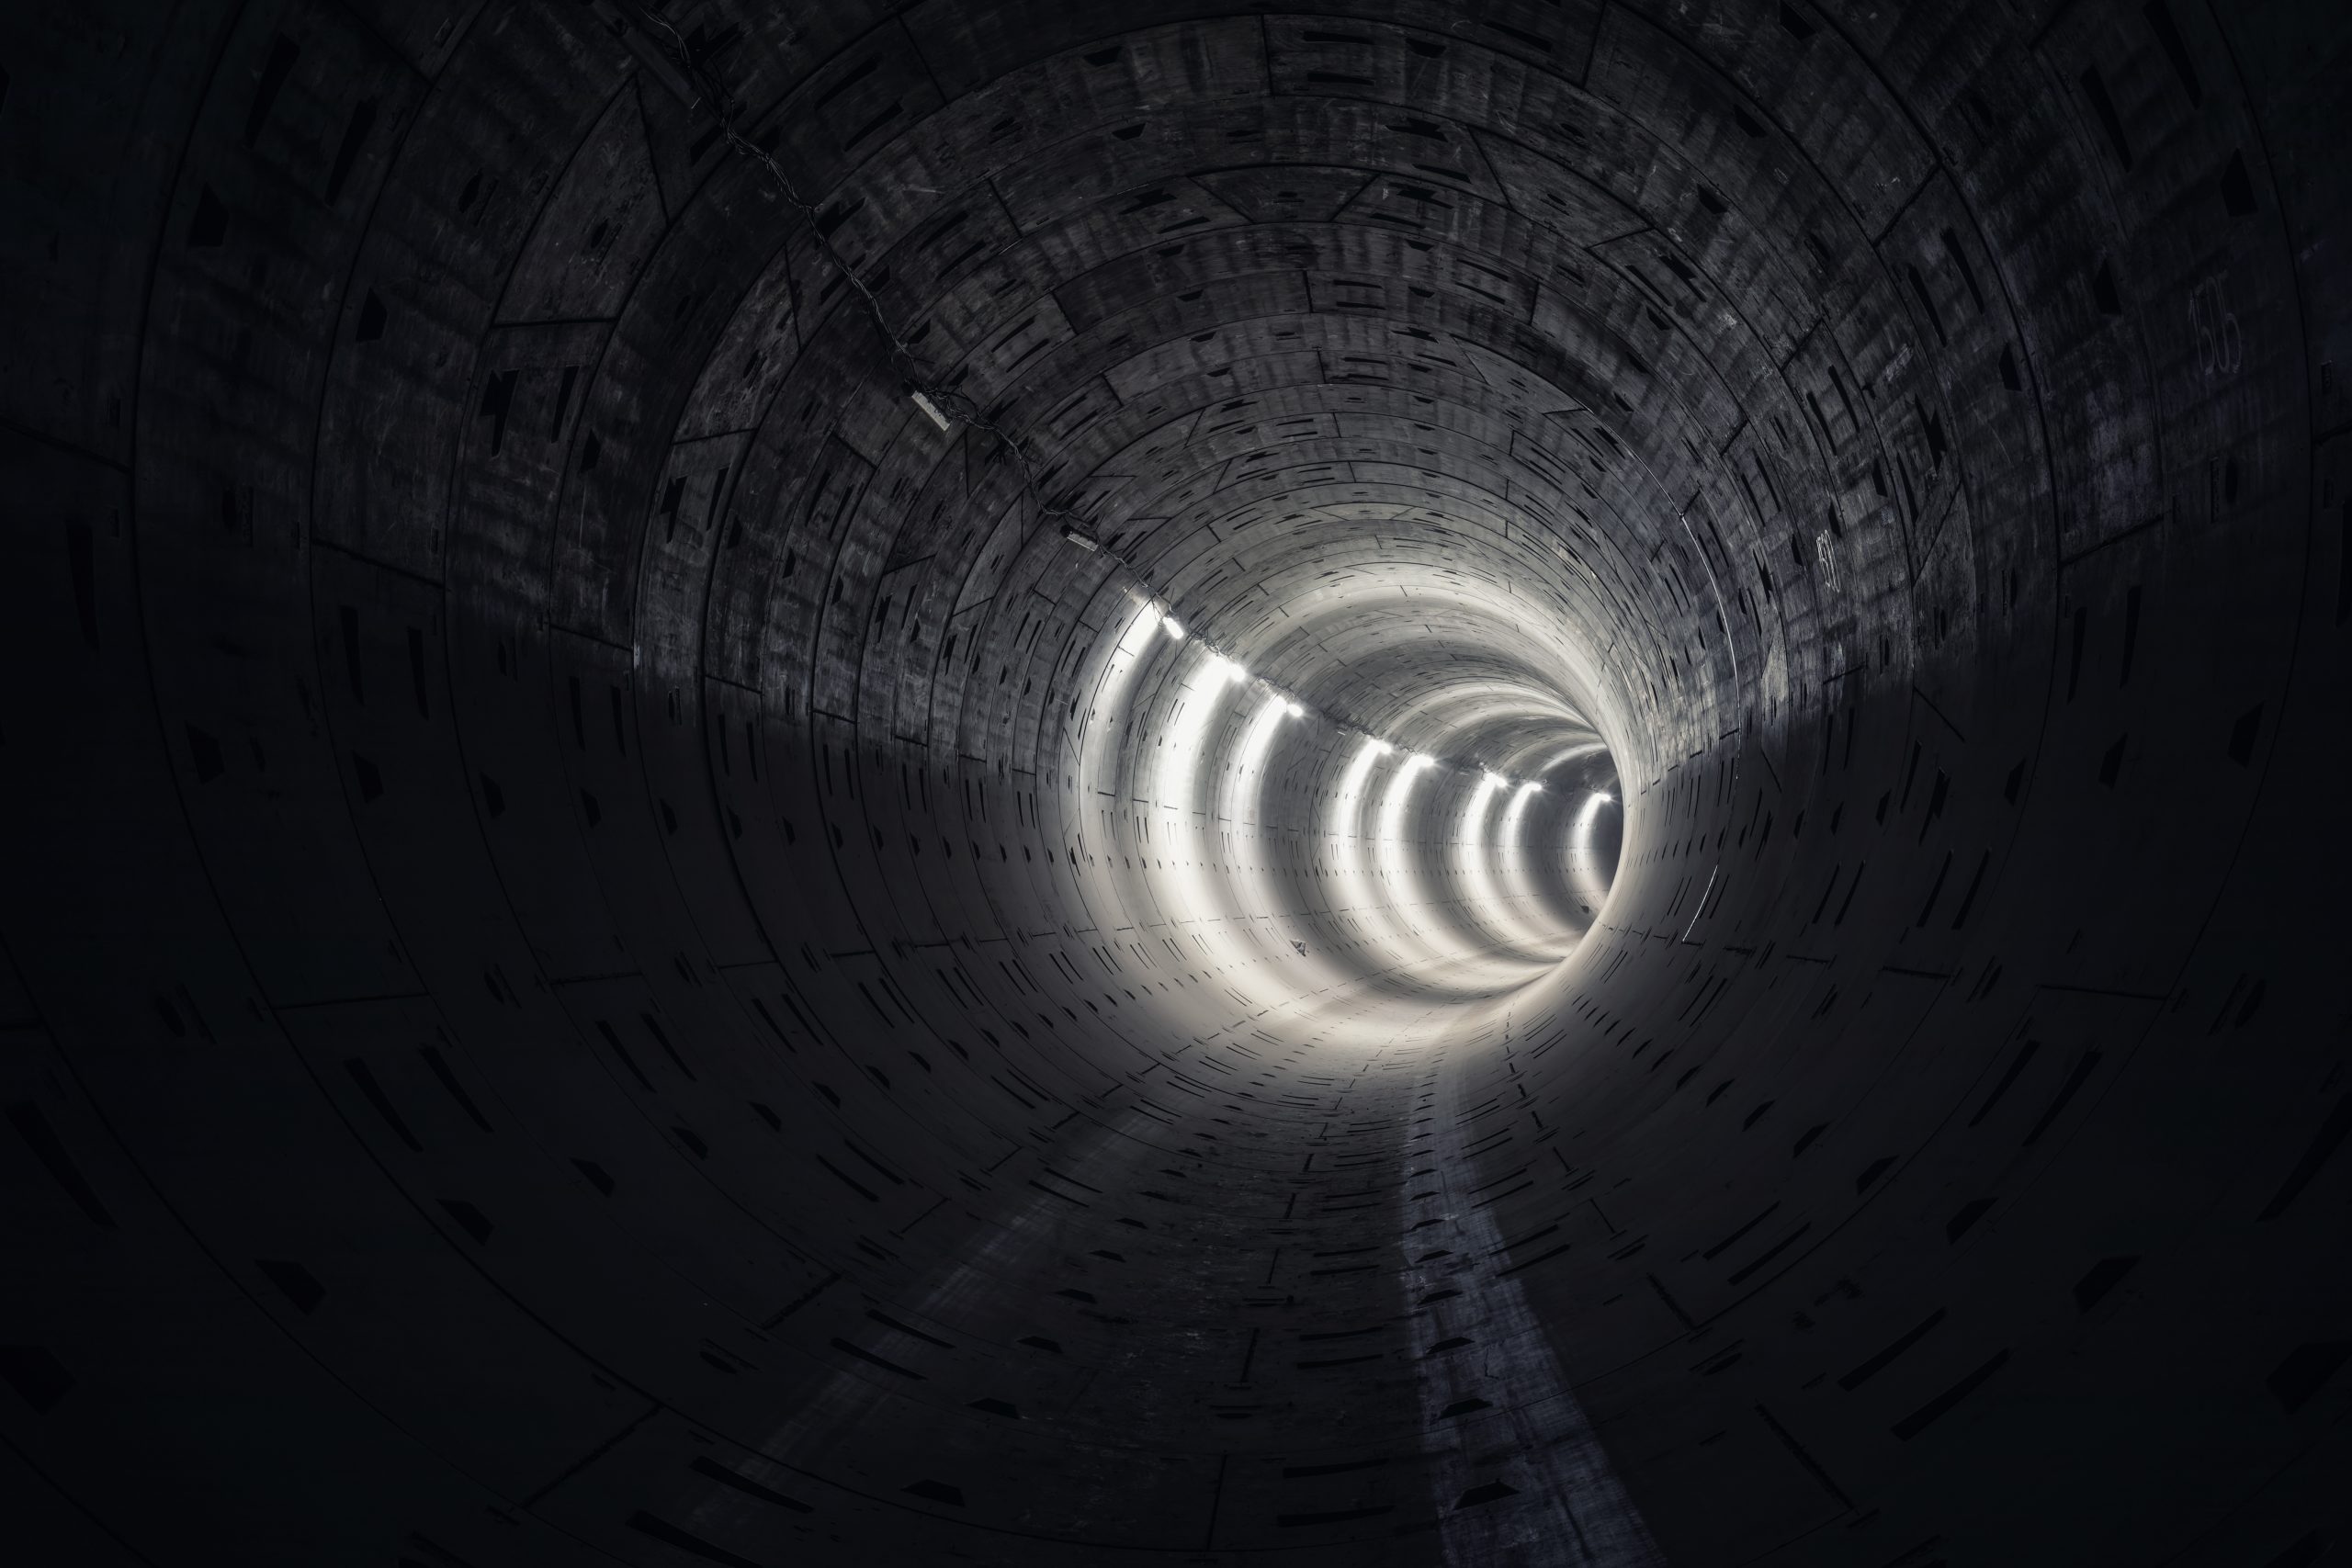 the dark subway tunnel 2021 08 31 13 47 07 utc